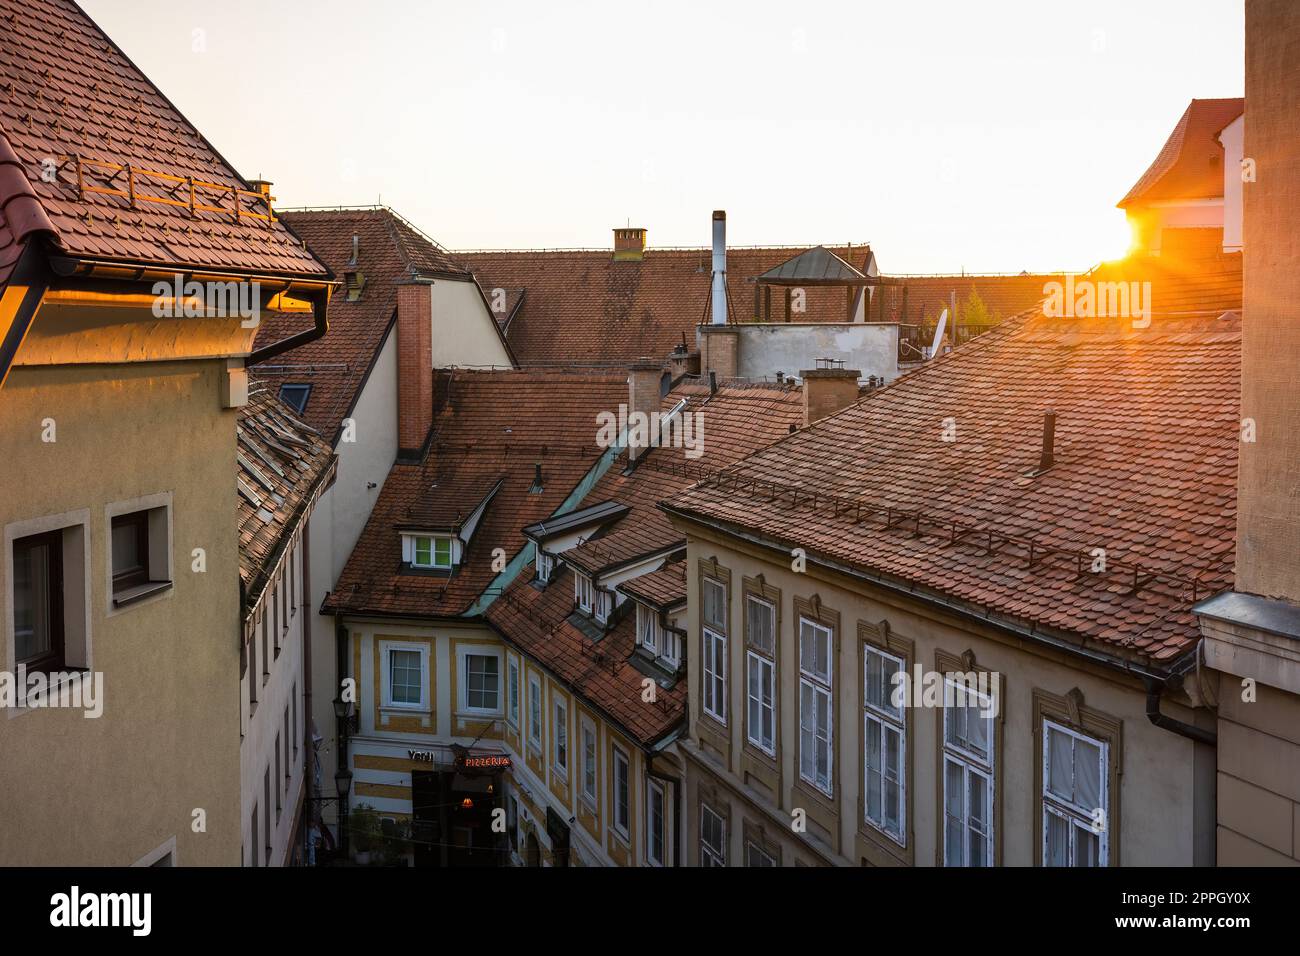 Coucher de soleil sur les toits avec tuiles rouges dans une ville avec de vieilles maisons Banque D'Images